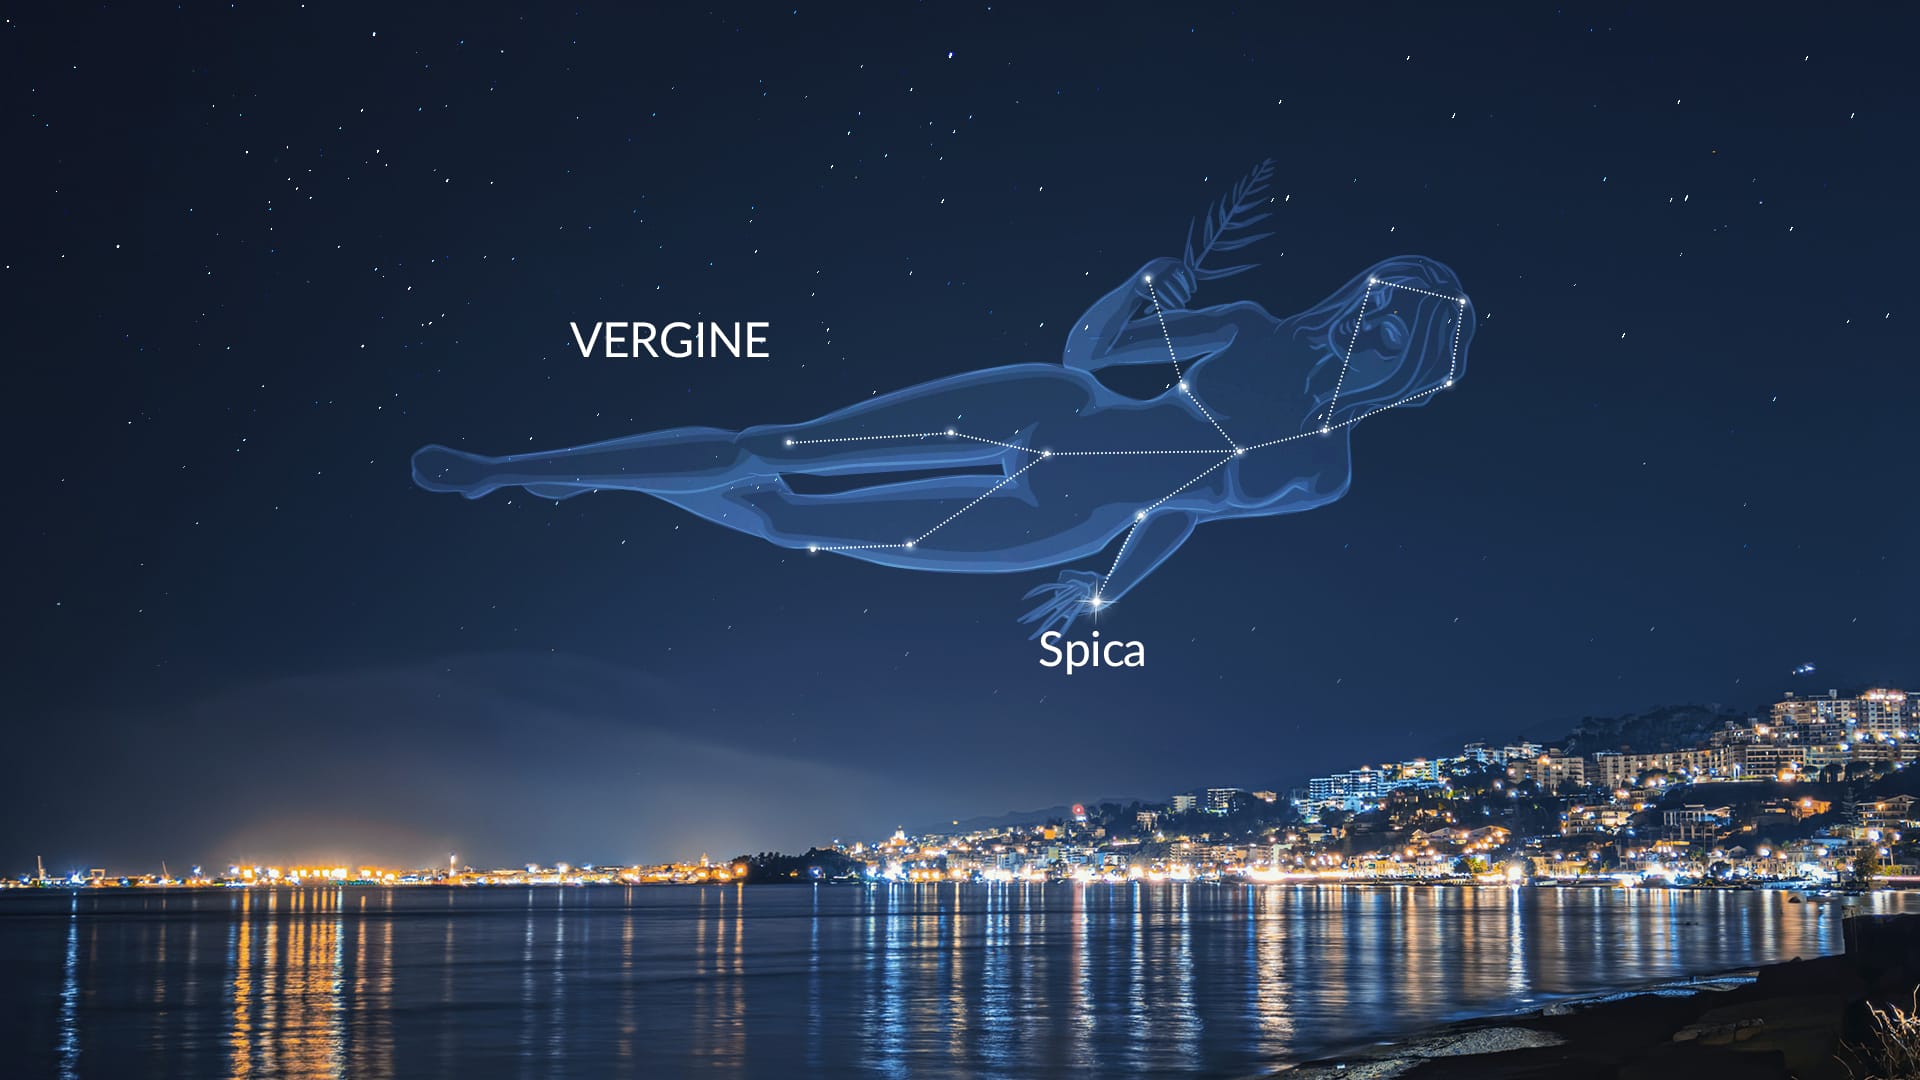 Spica: Virgo's Brightest Star